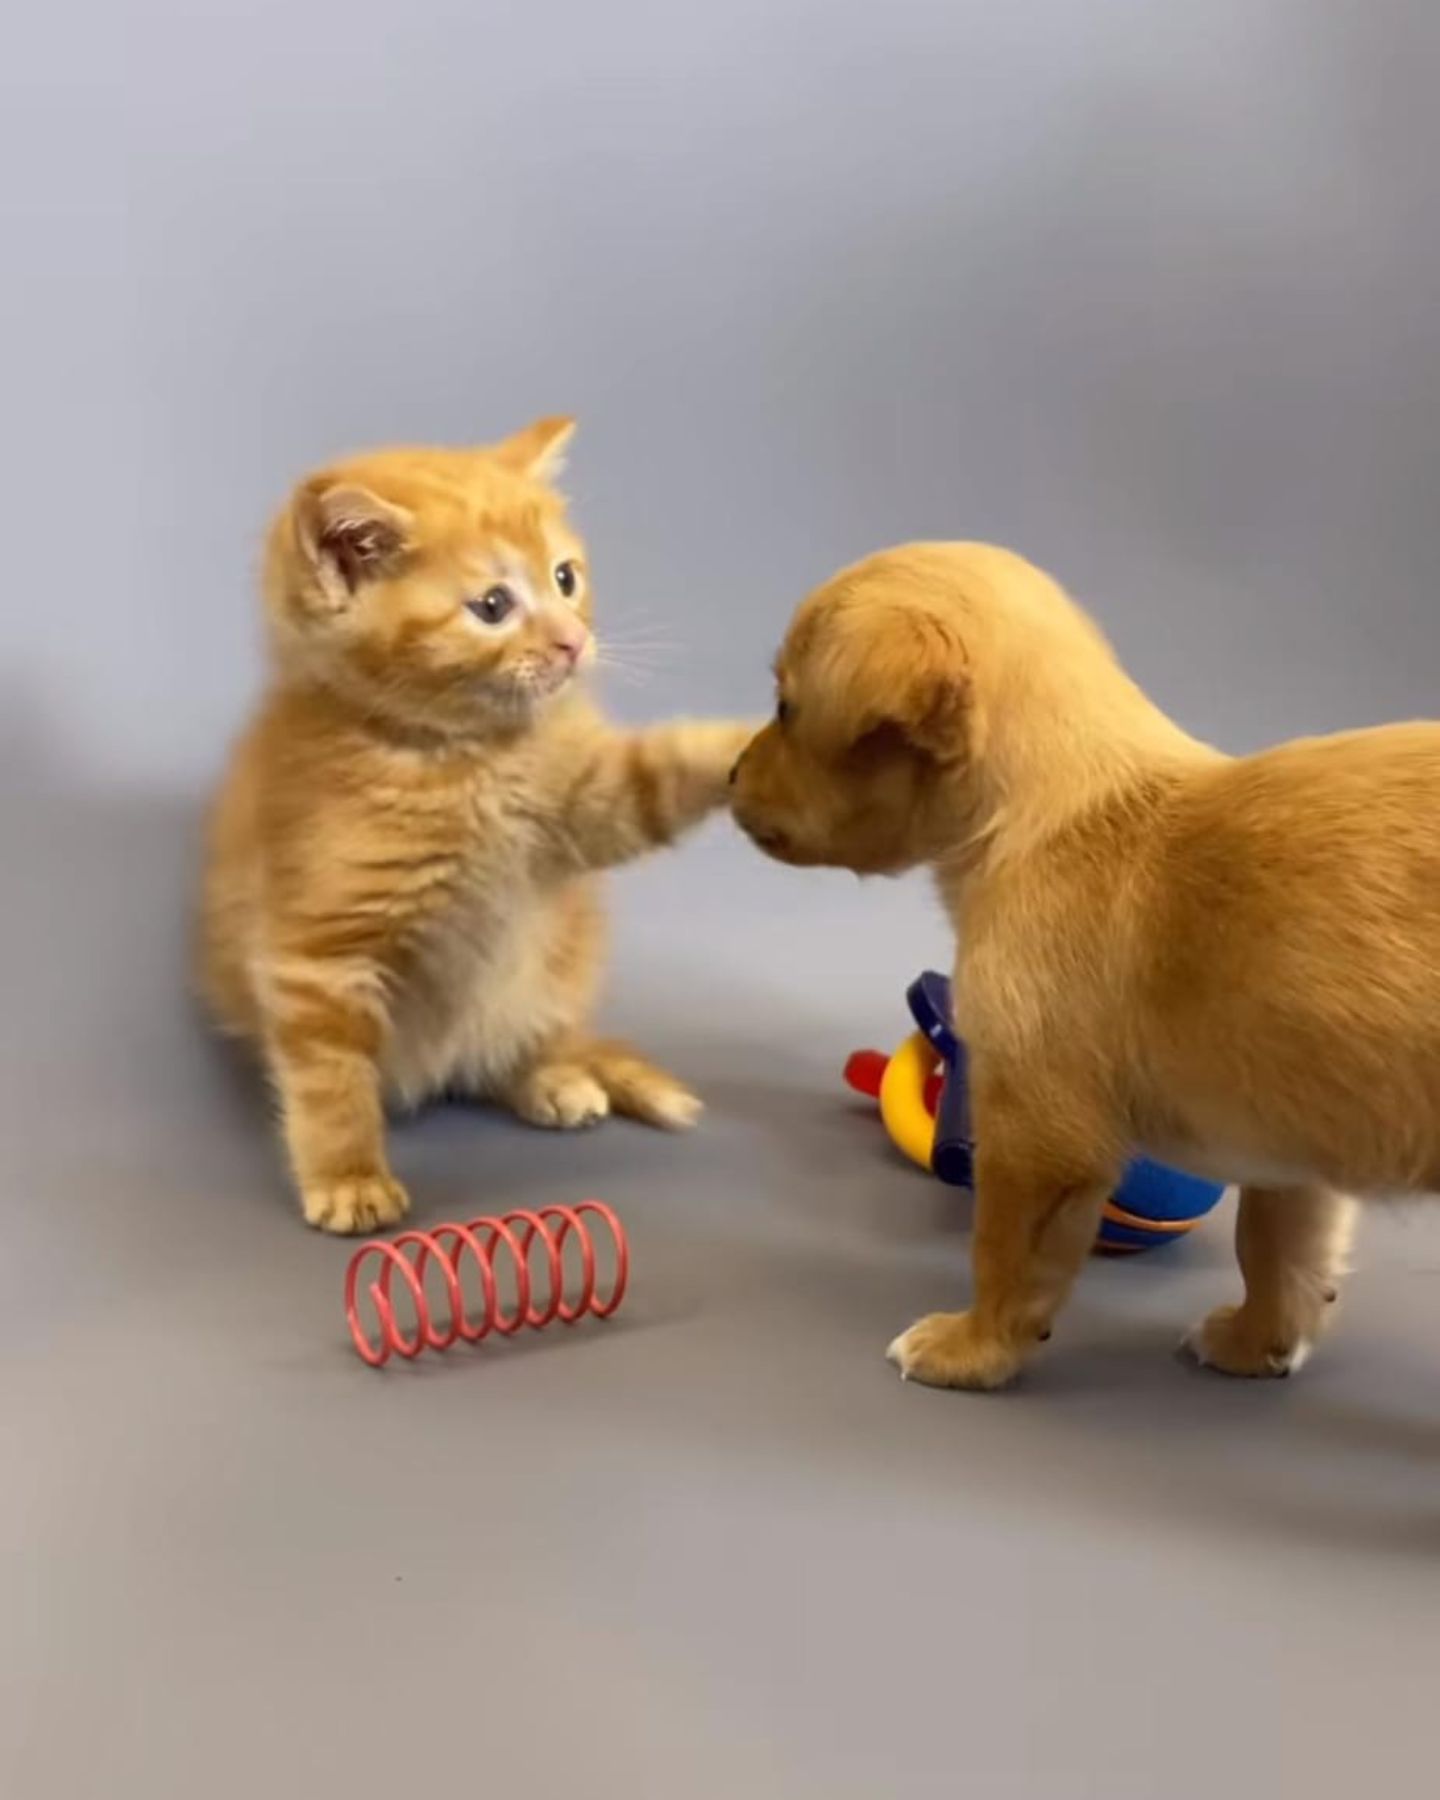 a kitten touching a puppy